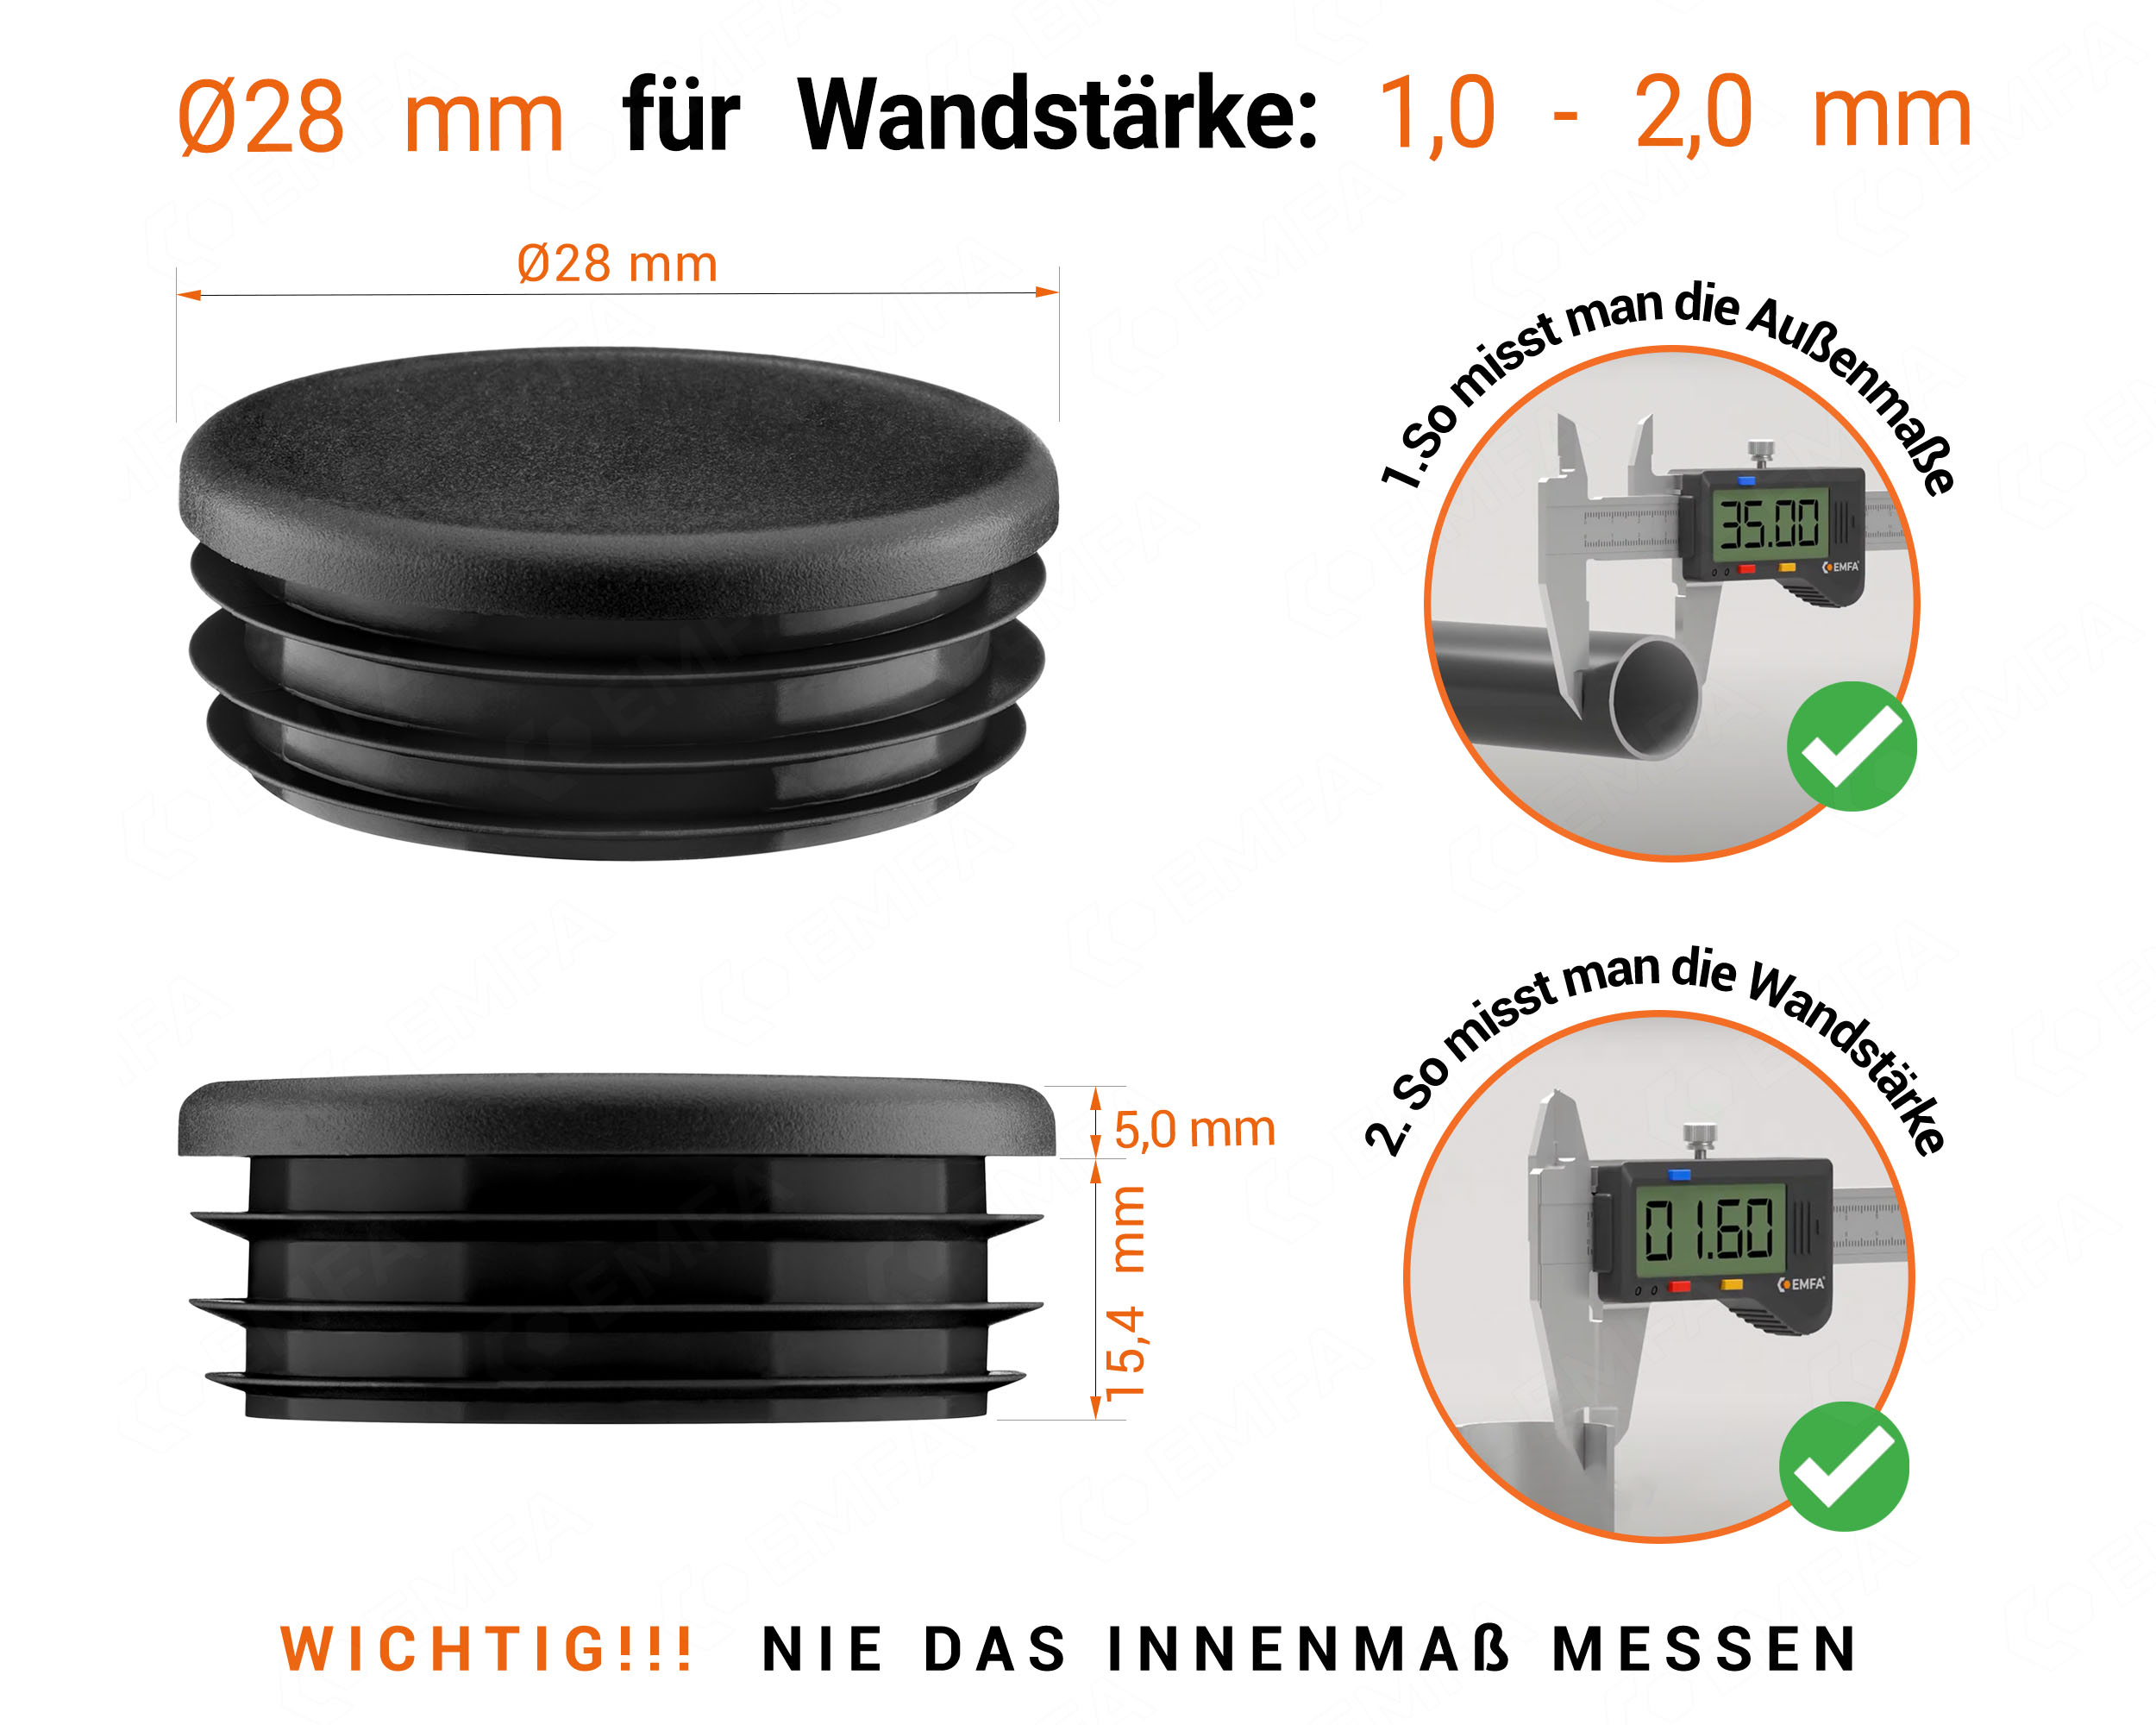 Schwarze Endkappe für Rundrohre in der Größe 28 mm mit technischen Abmessungen und Anleitung für korrekte Messung